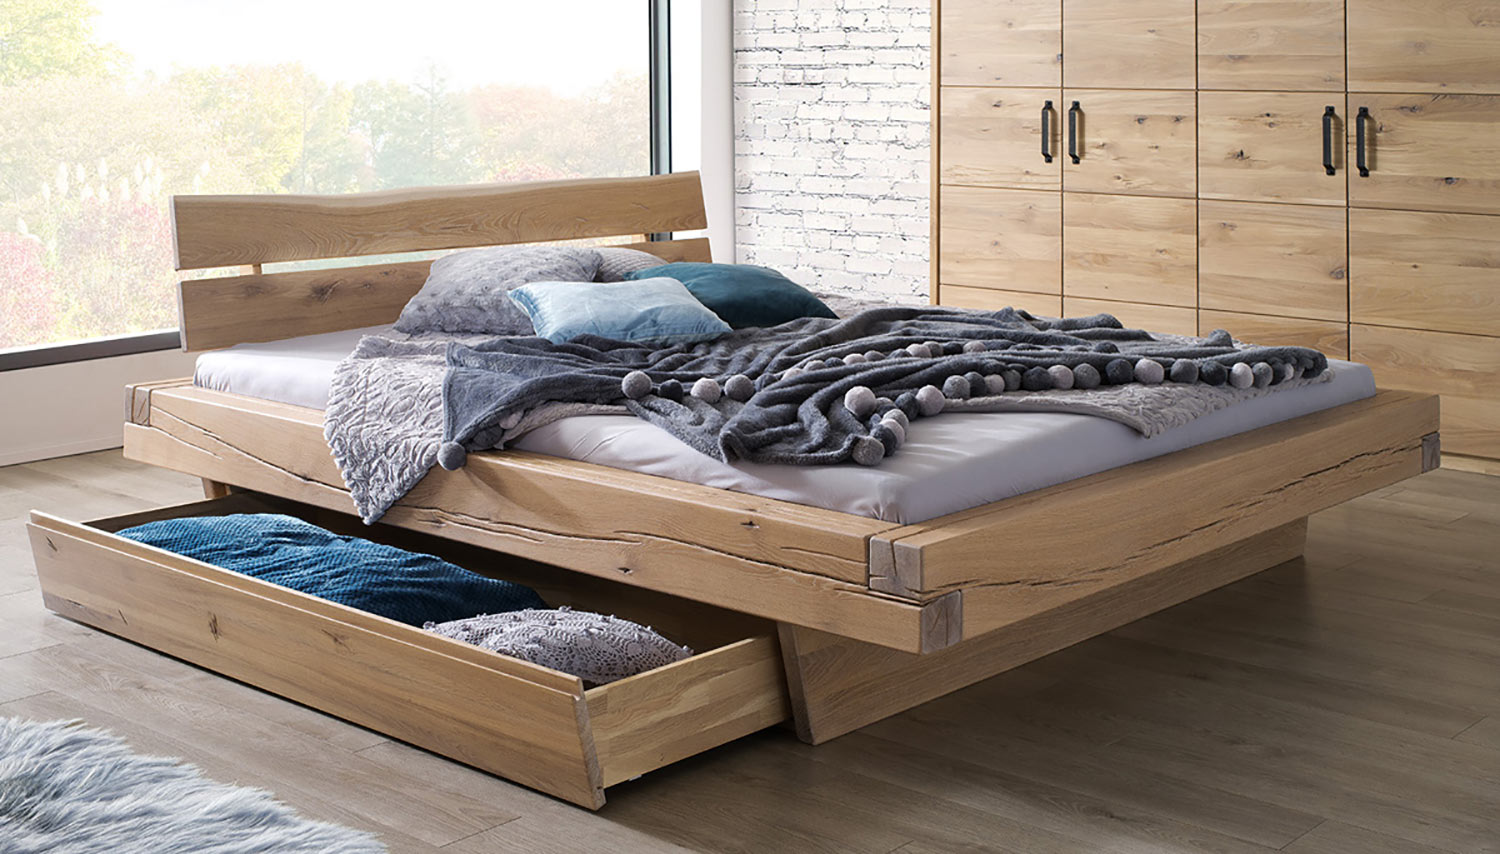 Masívne drevené postele z trámov sú hitom pre moderné interiéry. (Výrobca: NÁBYTOK MIREK)